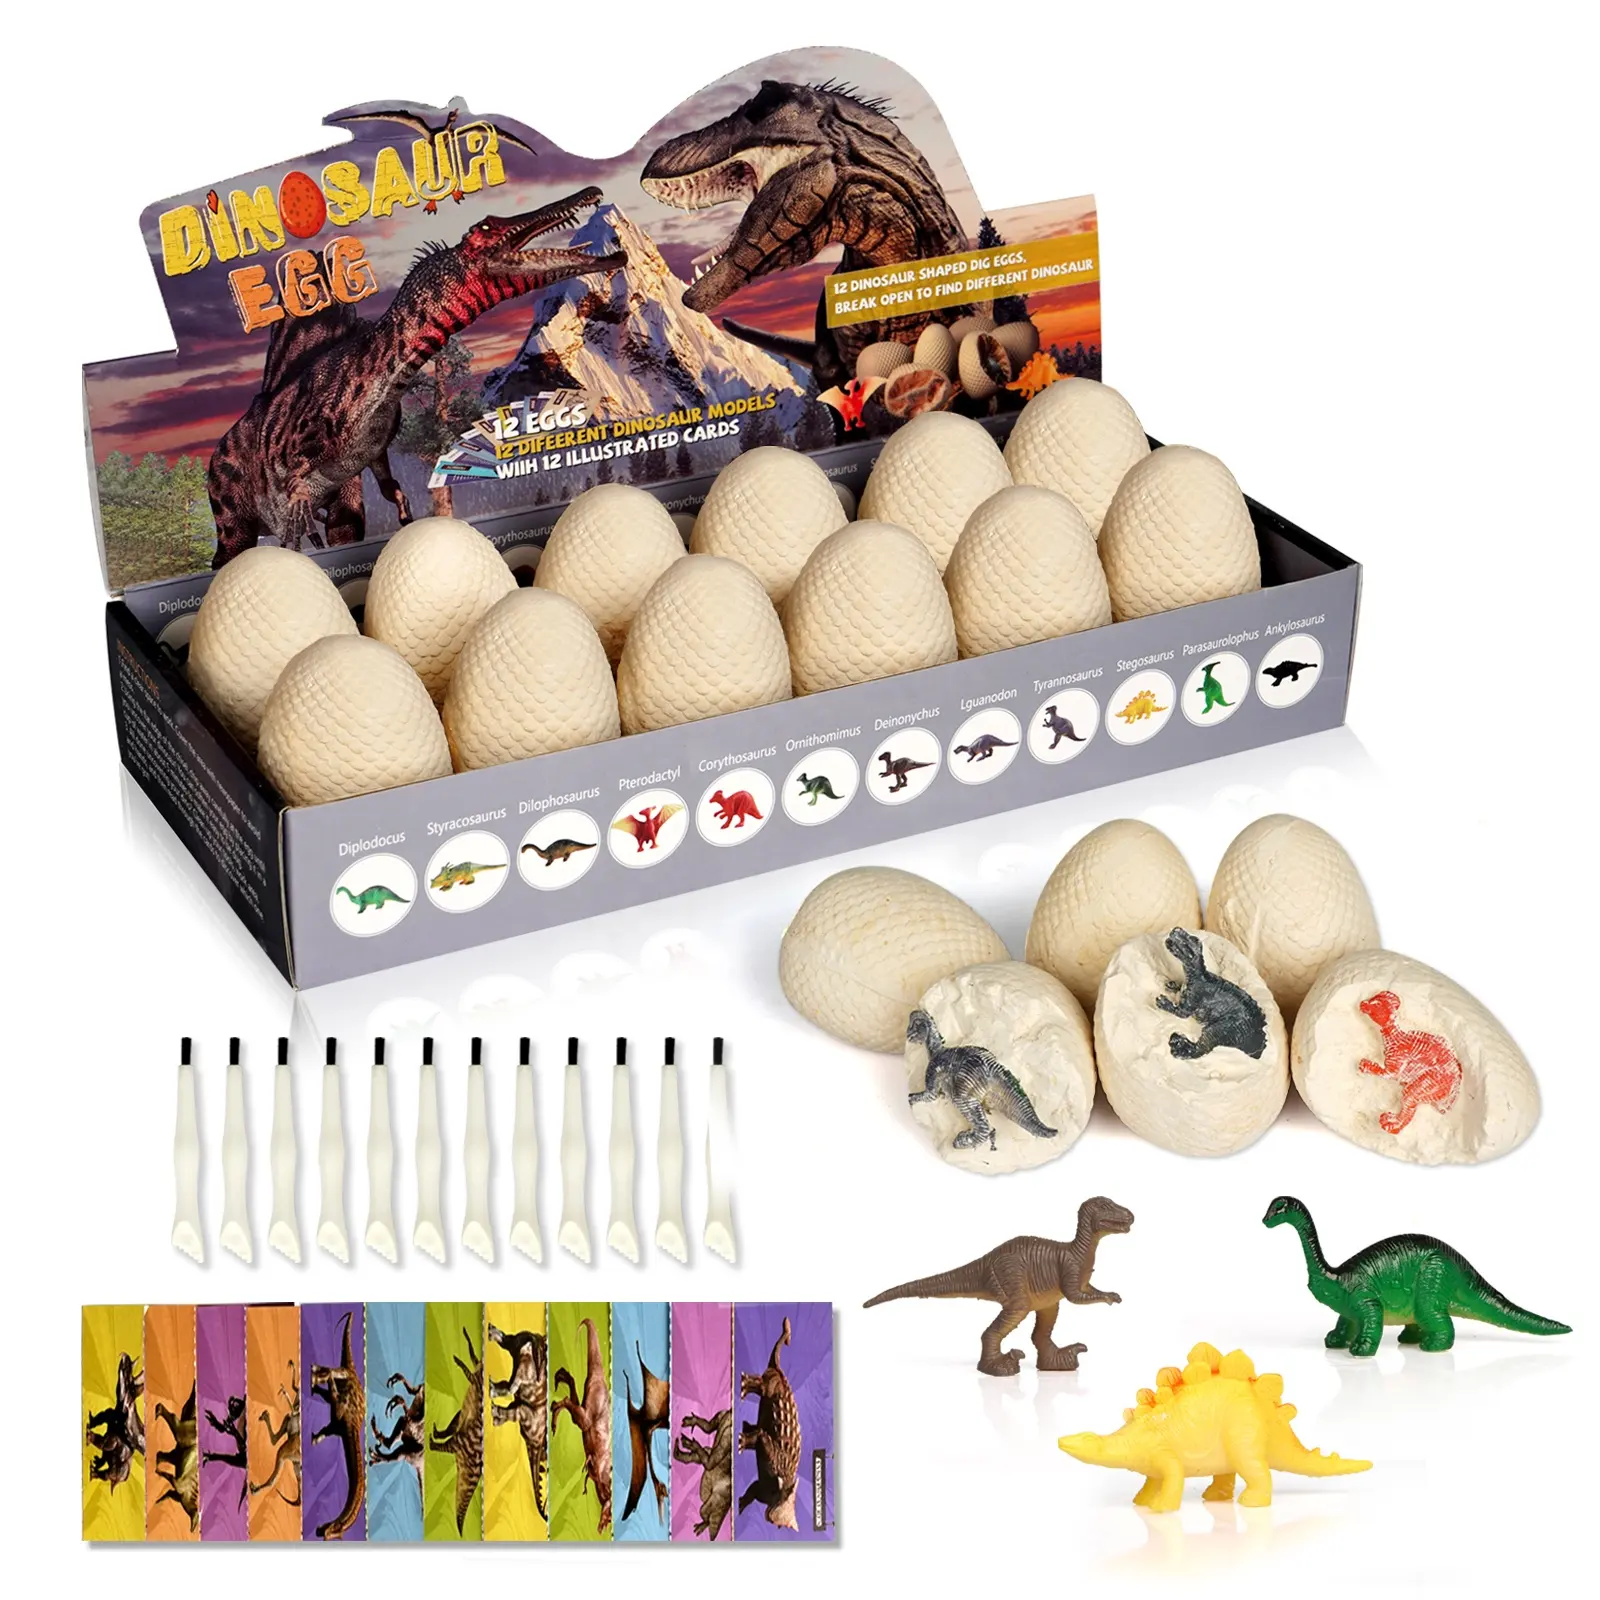 Kit de excavación G8608, juguetes fósiles de huevo de dinosaurio, juego de excavación de 12 huevos de dinosaurio, Kits educativos de ciencia, juguetes STEM para niños